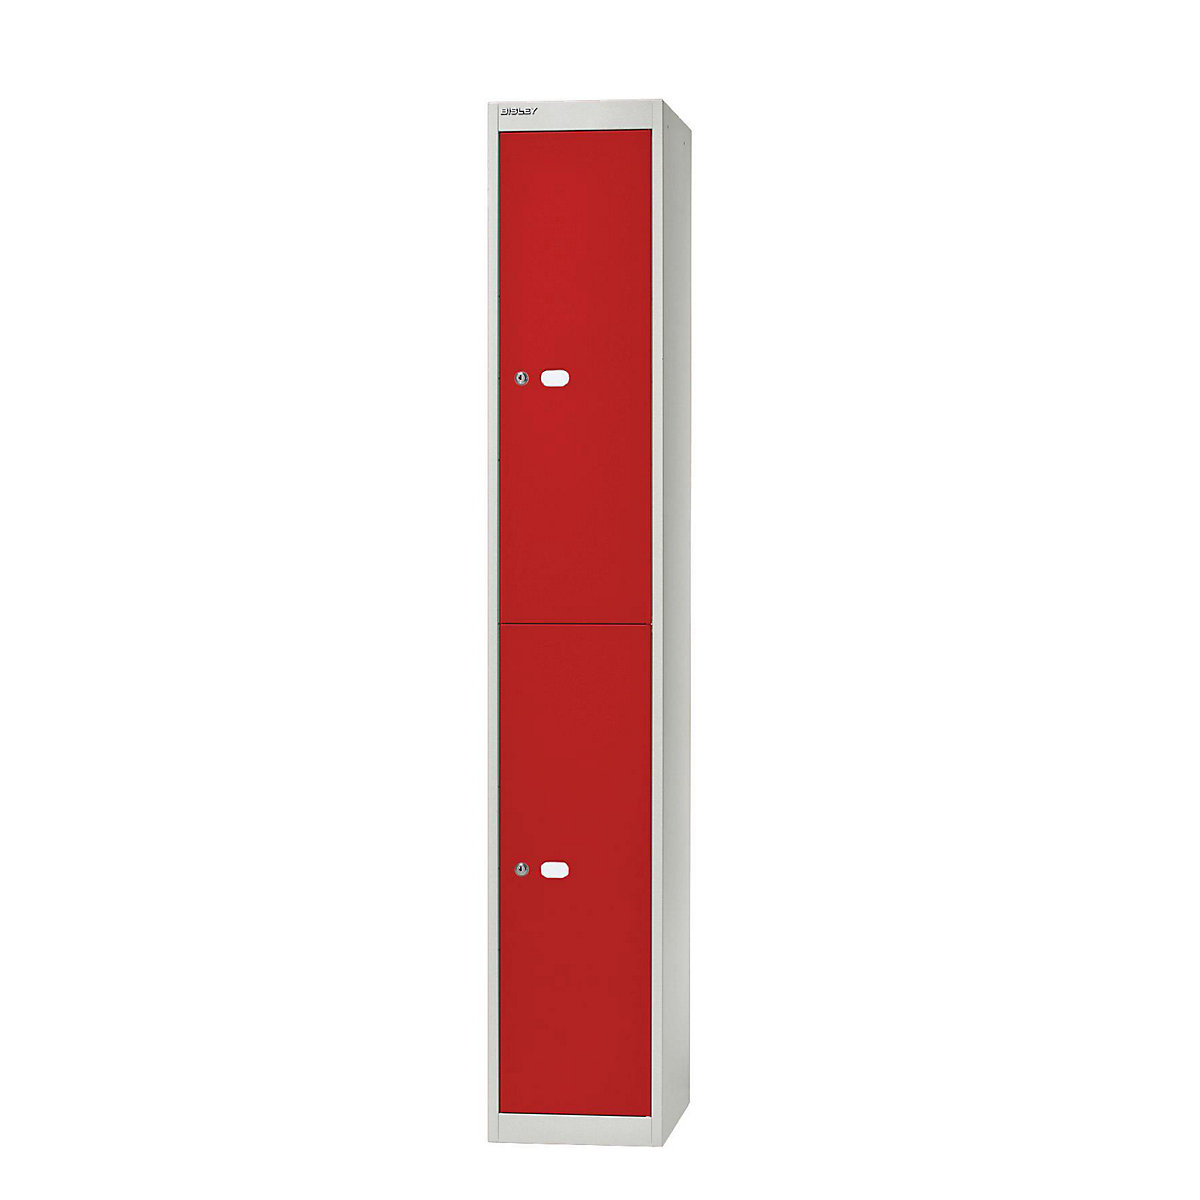 BISLEY OFFICE Garderobensystem, Tiefe 305 mm, 2 Fächer mit je 1 Kleiderhaken, Korpusfarbe Lichtgrau, Türfarbe Kardinalrot